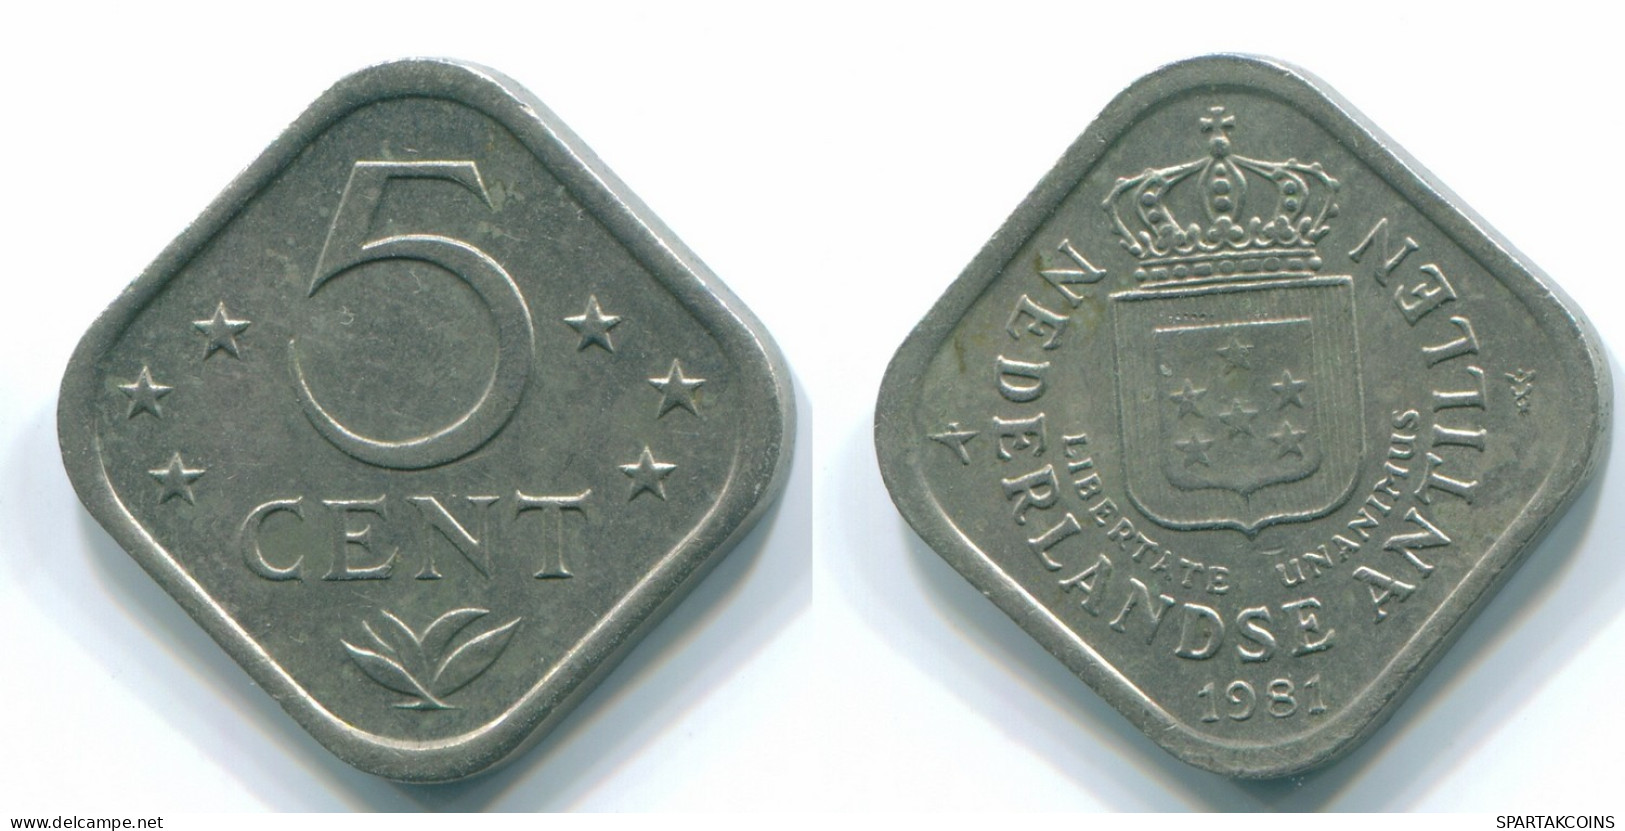 5 CENTS 1981 NETHERLANDS ANTILLES Nickel Colonial Coin #S12345.U.A - Niederländische Antillen